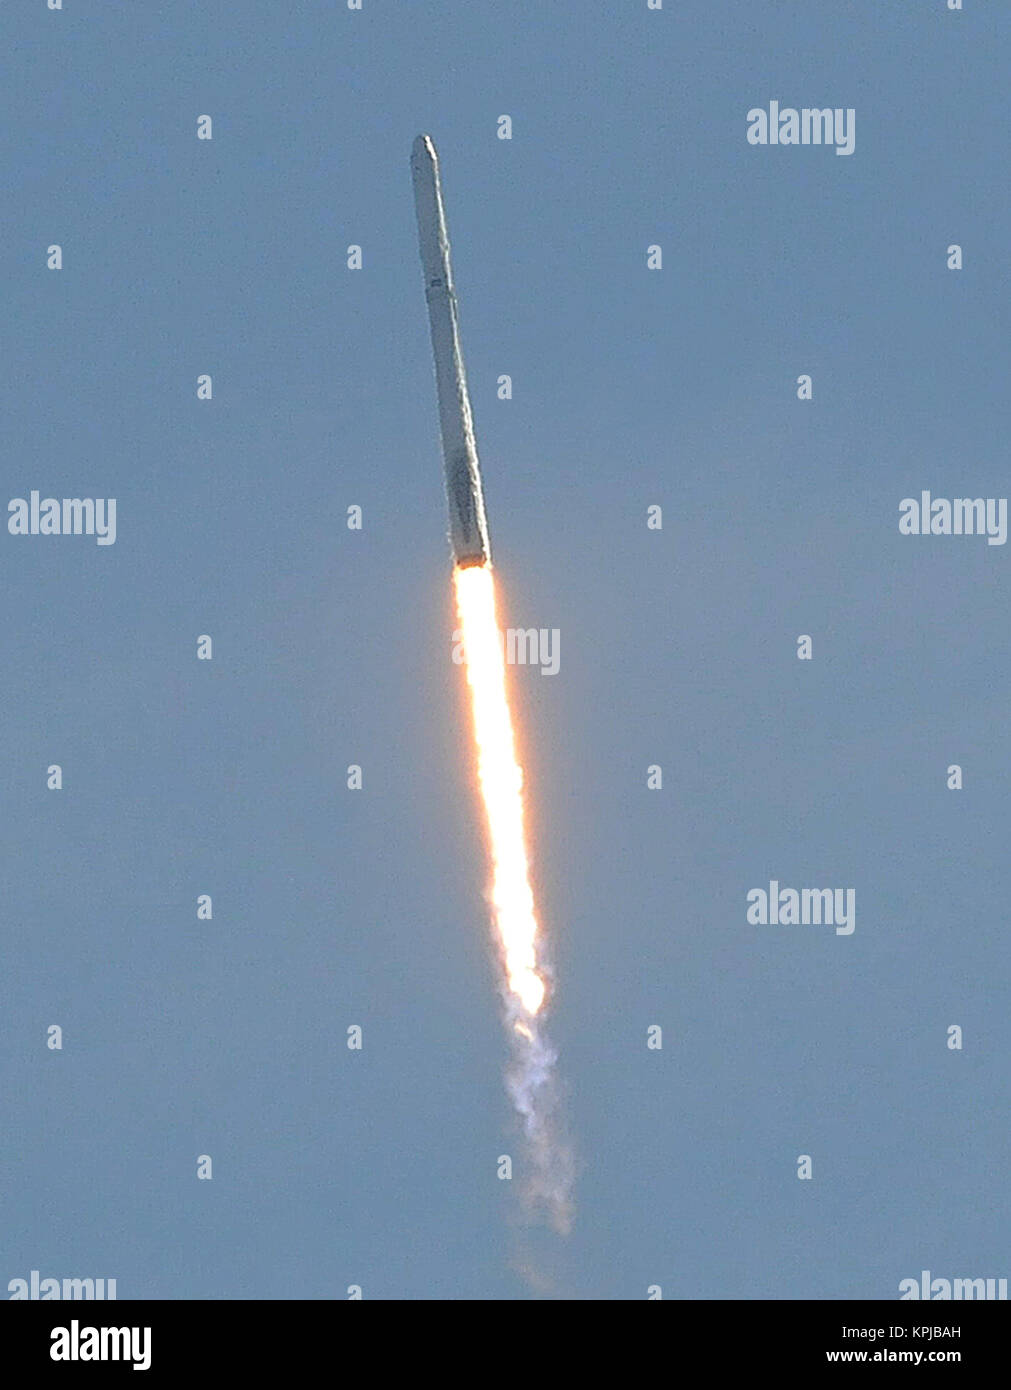 Dezember 15, 2017 - Cape Canaveral, Florida, United States - eine SpaceX Falcon 9 Rakete mit einem Drachen Raumfahrzeug abhebt vom Weltraum aus komplexen 40 Start am 15. Dezember 2017 in Cape Canaveral Air Force Station in Florida. Wird die Sonde liefern fast 4.800 lbs Research, crew liefert, und die Befestigungsteile an der Internationalen Raumstation (ISS). Dies ist der 13. cargo Mission von SpaceX zur ISS. (Paul Hennessy/Alamy) Stockfoto